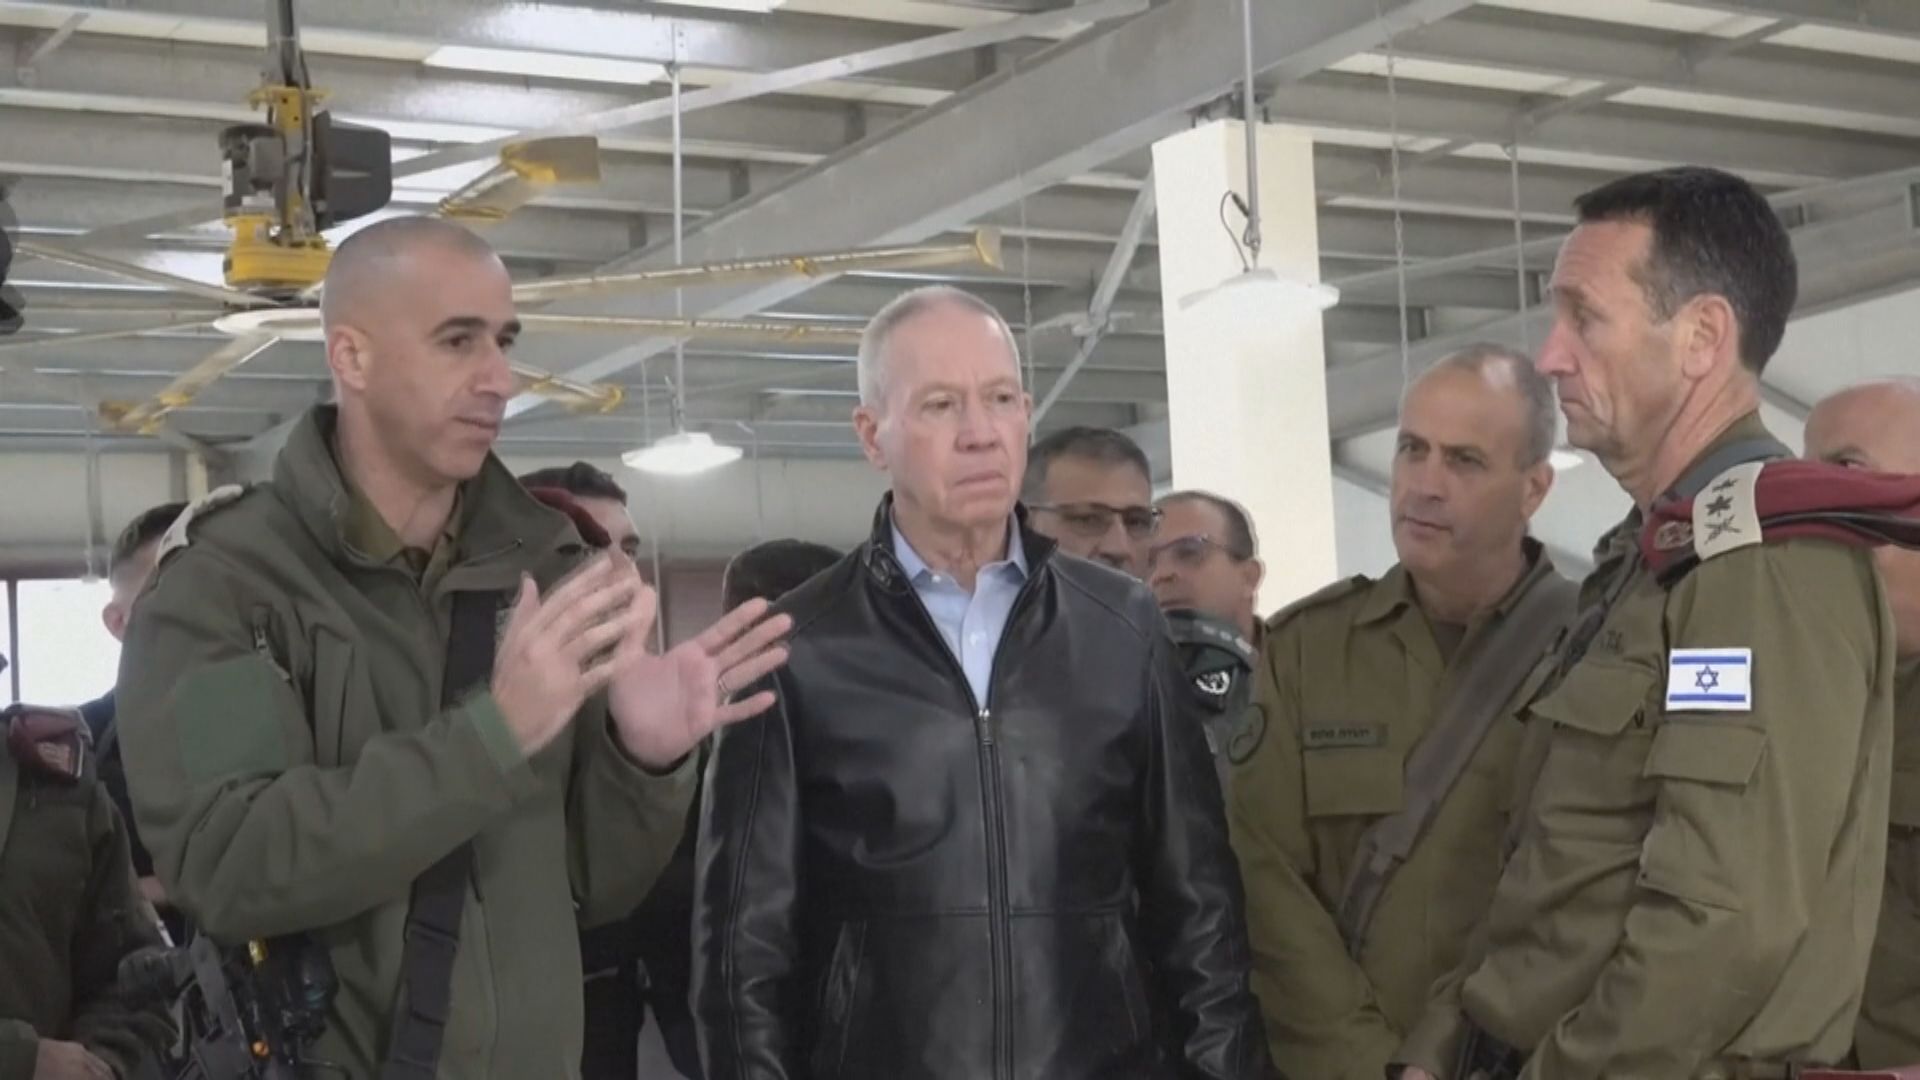 以色列國防部長公開反對司法改革後突遭革職